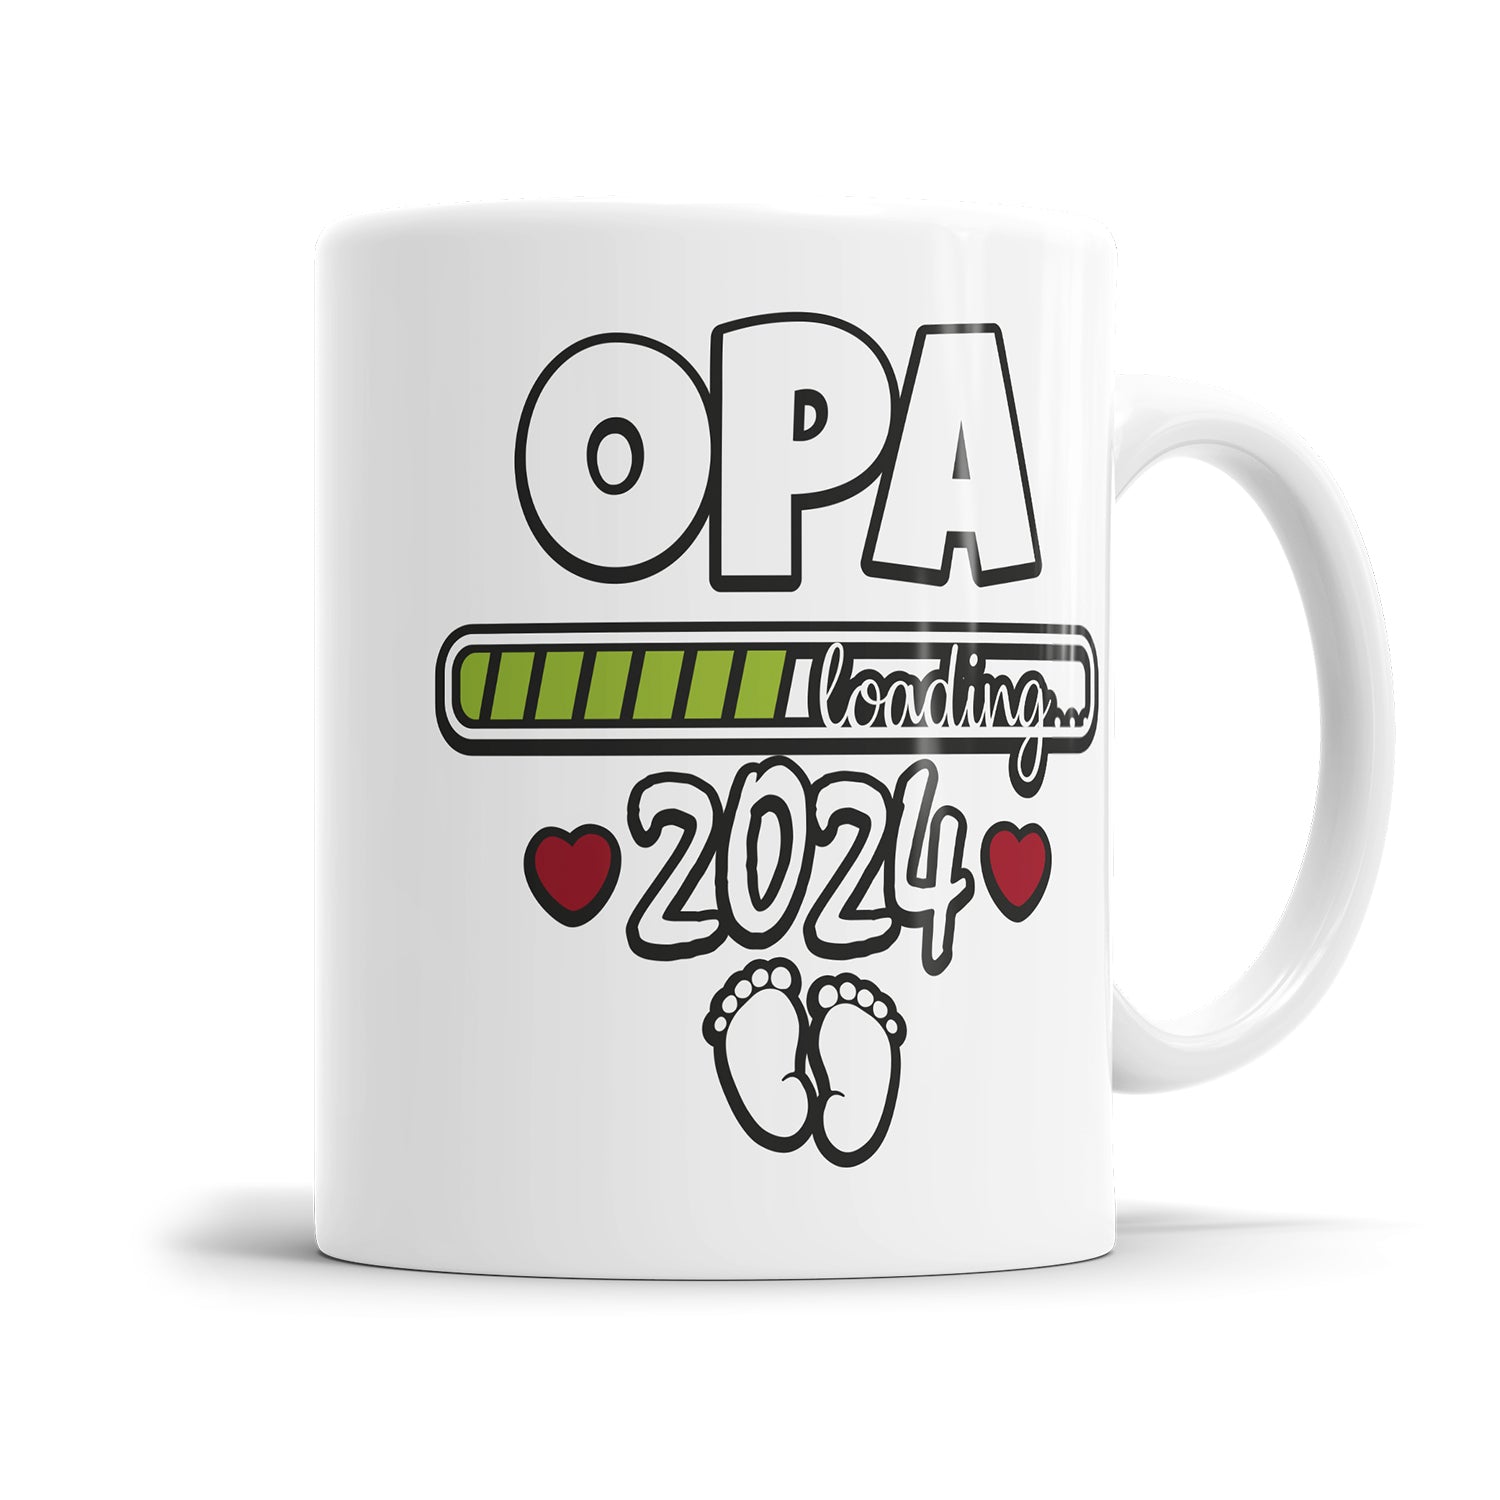 Tasse für werdenden Opa - Opa loading 2024 Ladebalken Babyfüsse Fulima